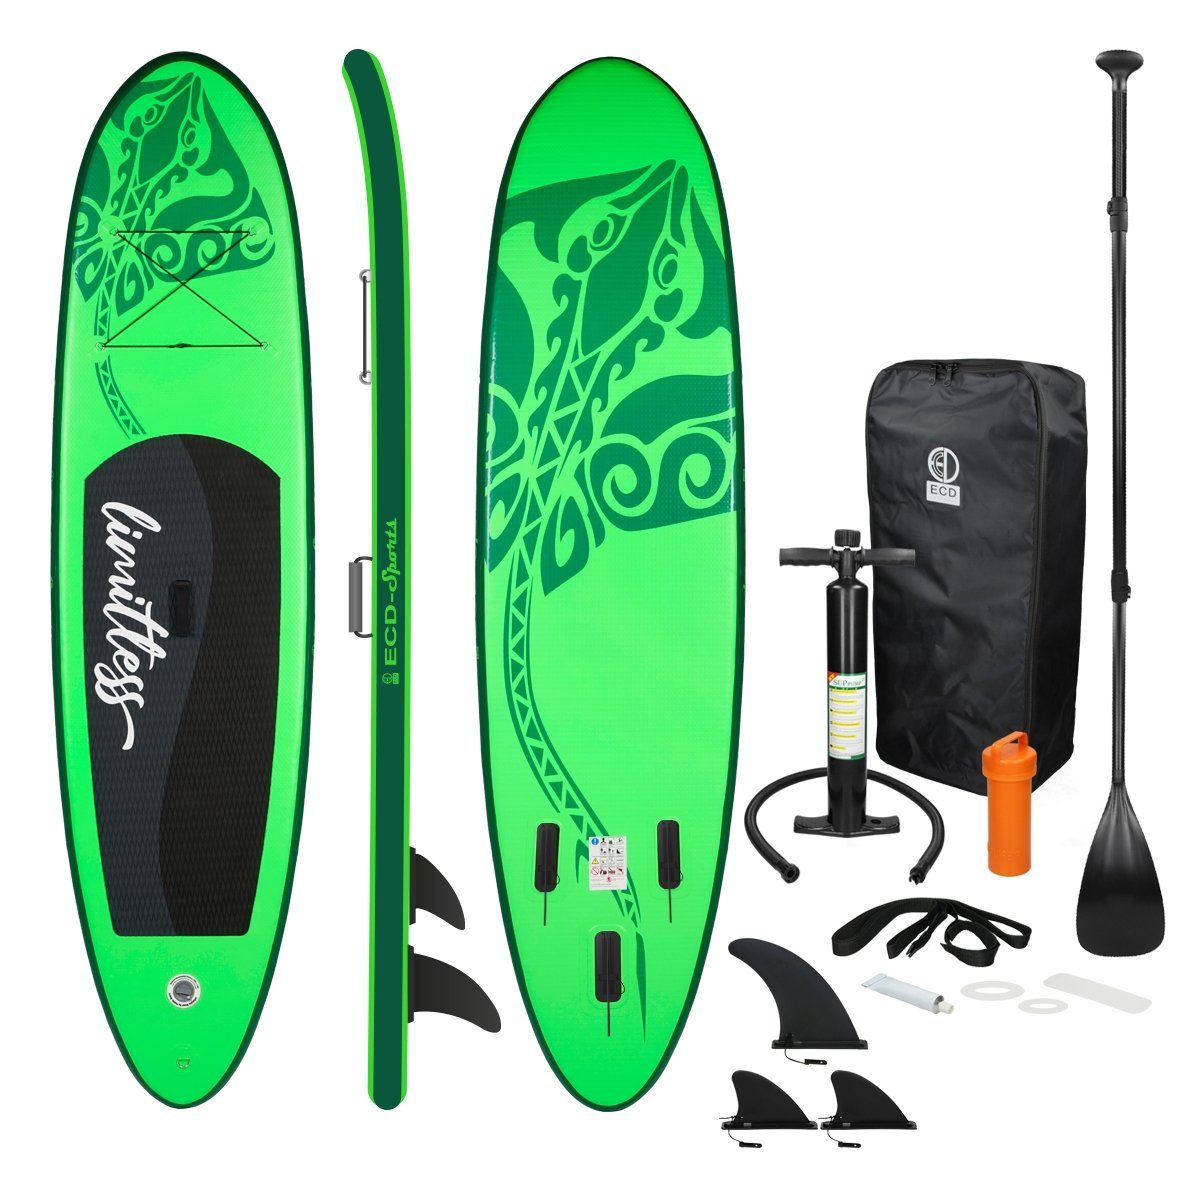 ECD Germany SUP-Board Aufblasbares Stand Up Paddle Board Limitless Surfboard, Grün 308x76x10cm PVC bis 120kg Pumpe Tragetasche Zubehör | SUP-Boards